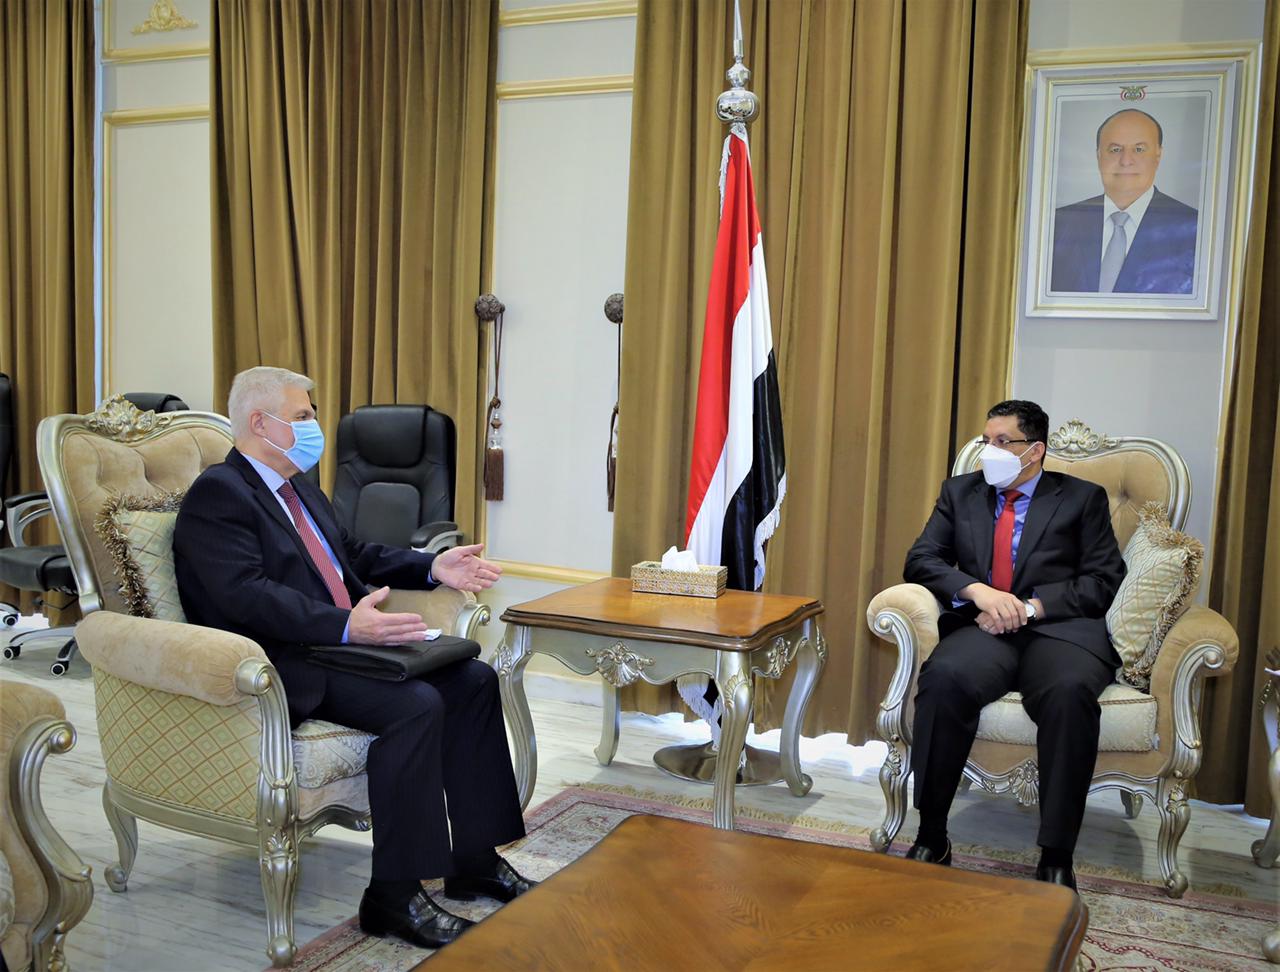 وزير الخارجية يبحث مع السفير الروسي المستجدات على الساحة اليمنية